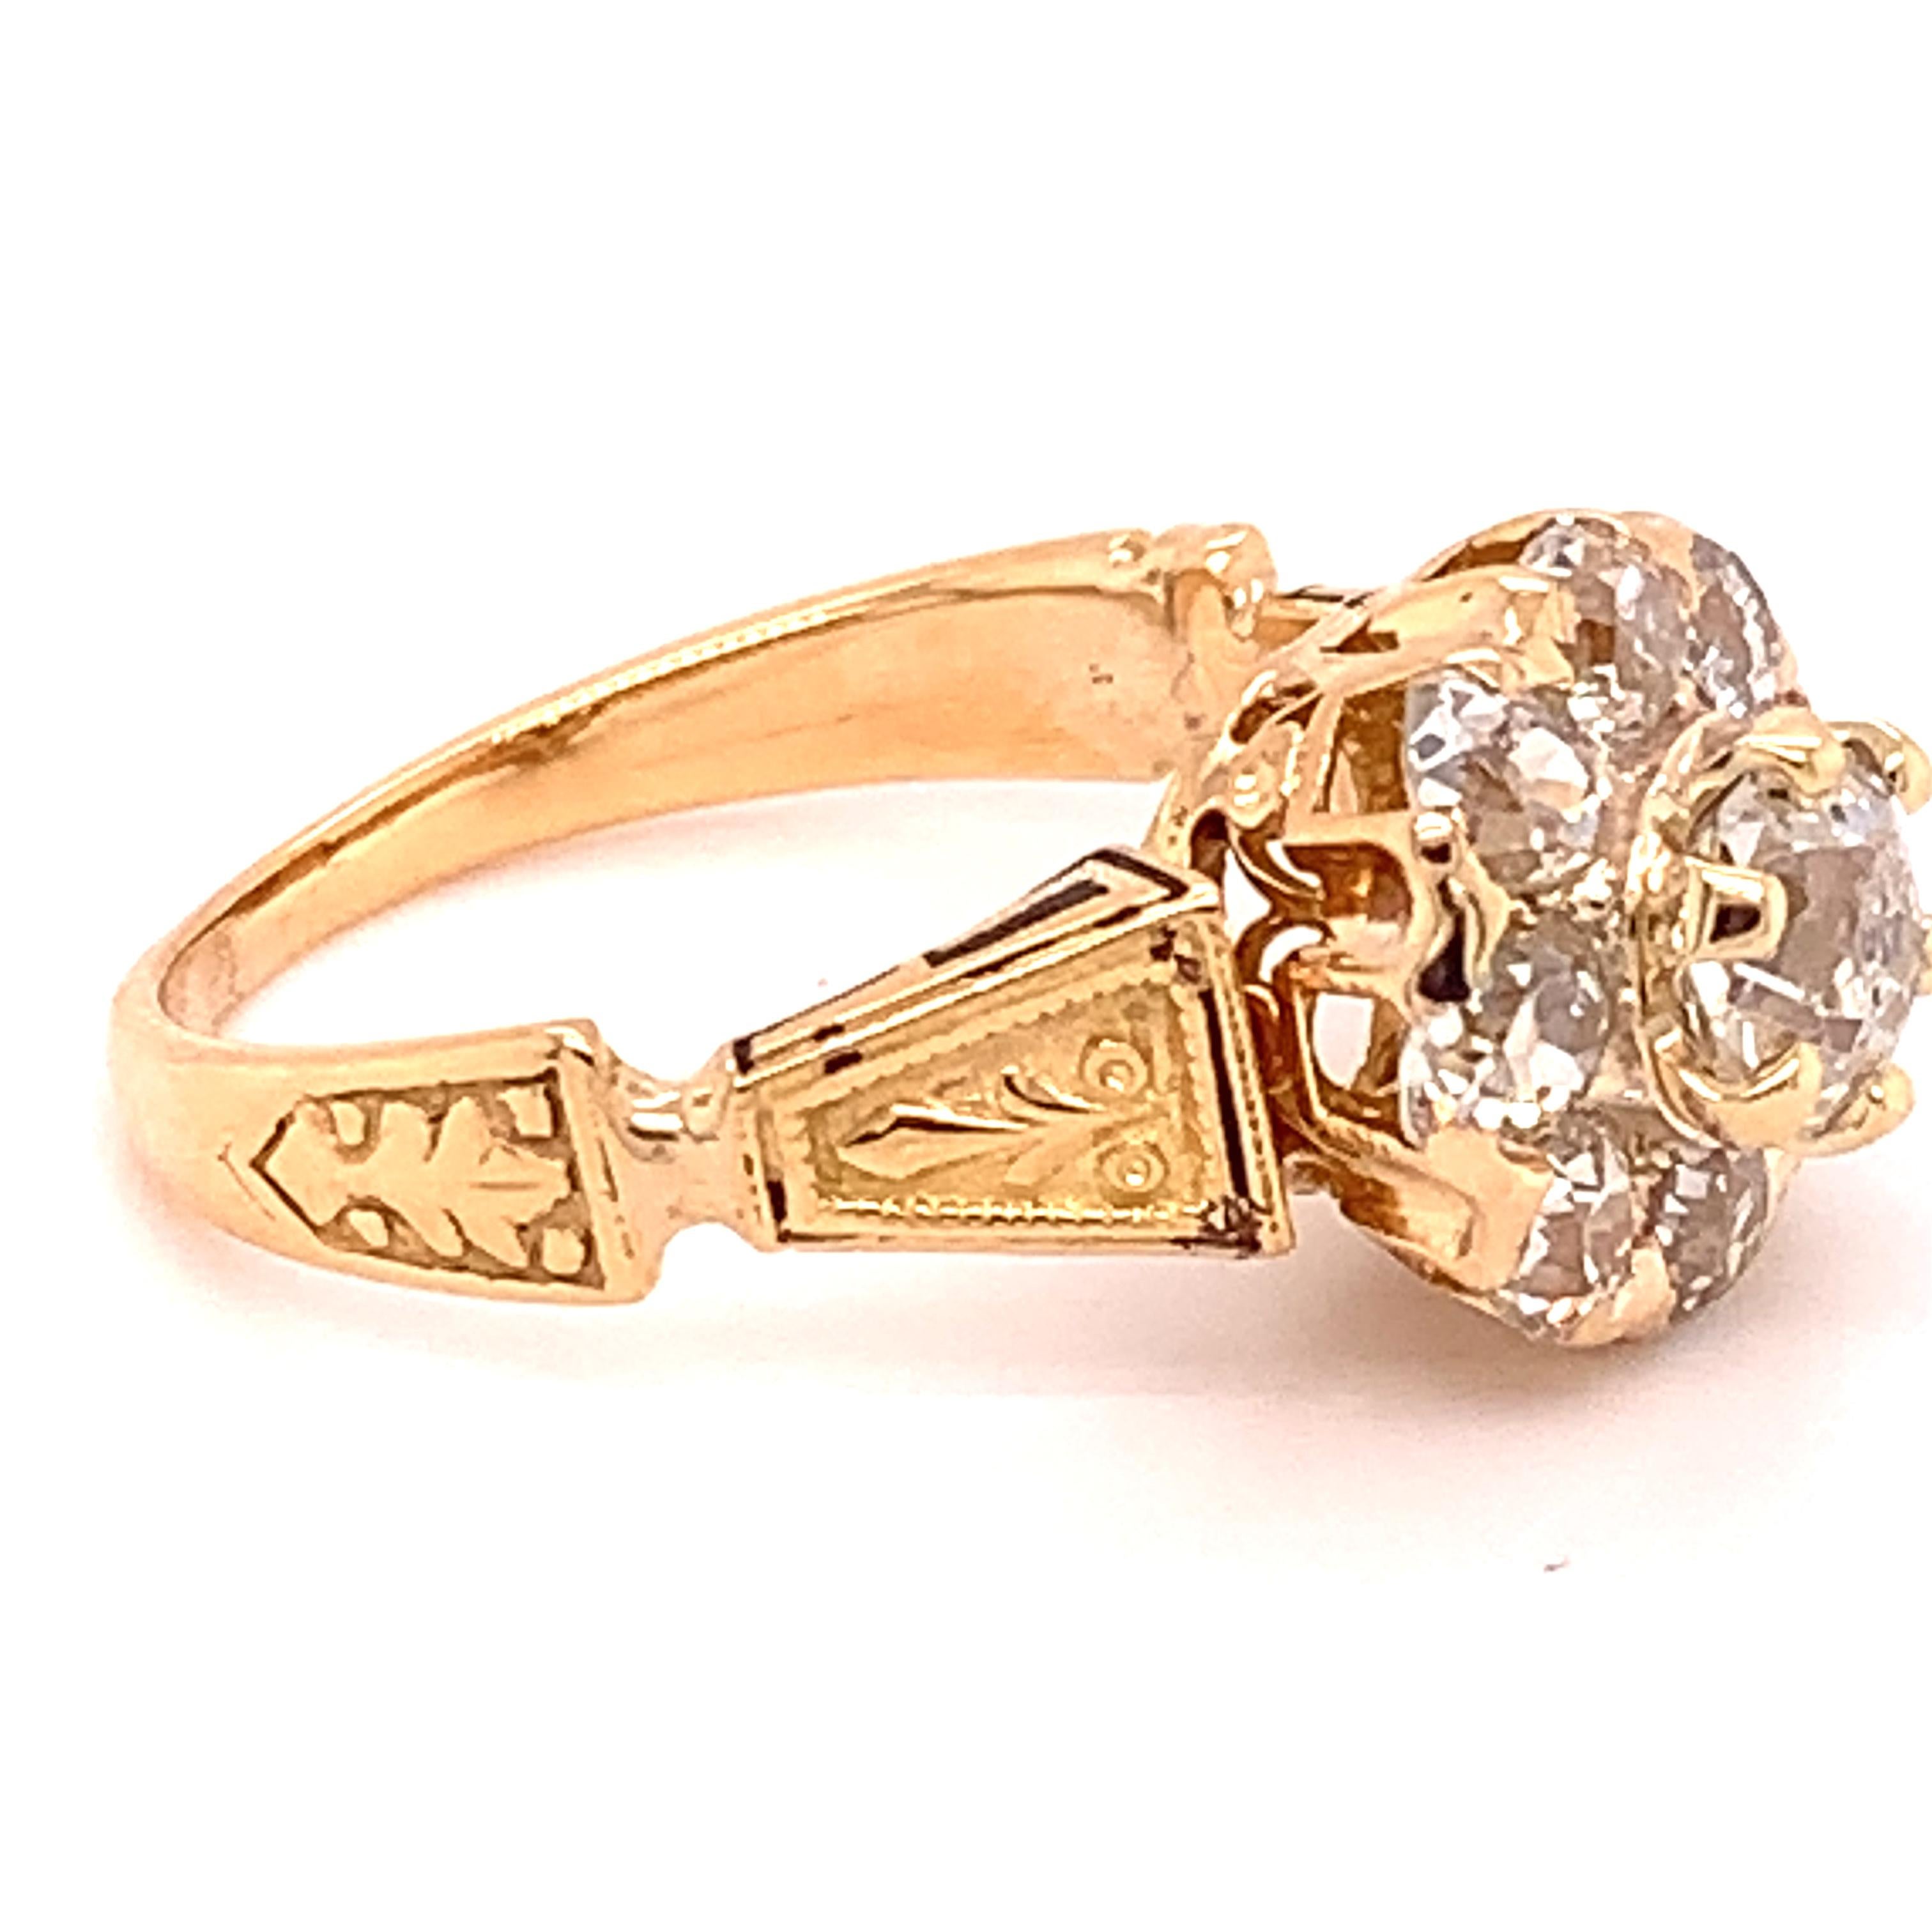 Old Mine Cut 14k Gold Victorian Mine Cut Genuine Natural Diamond Ring 1.61 Carats TW '#J4863'